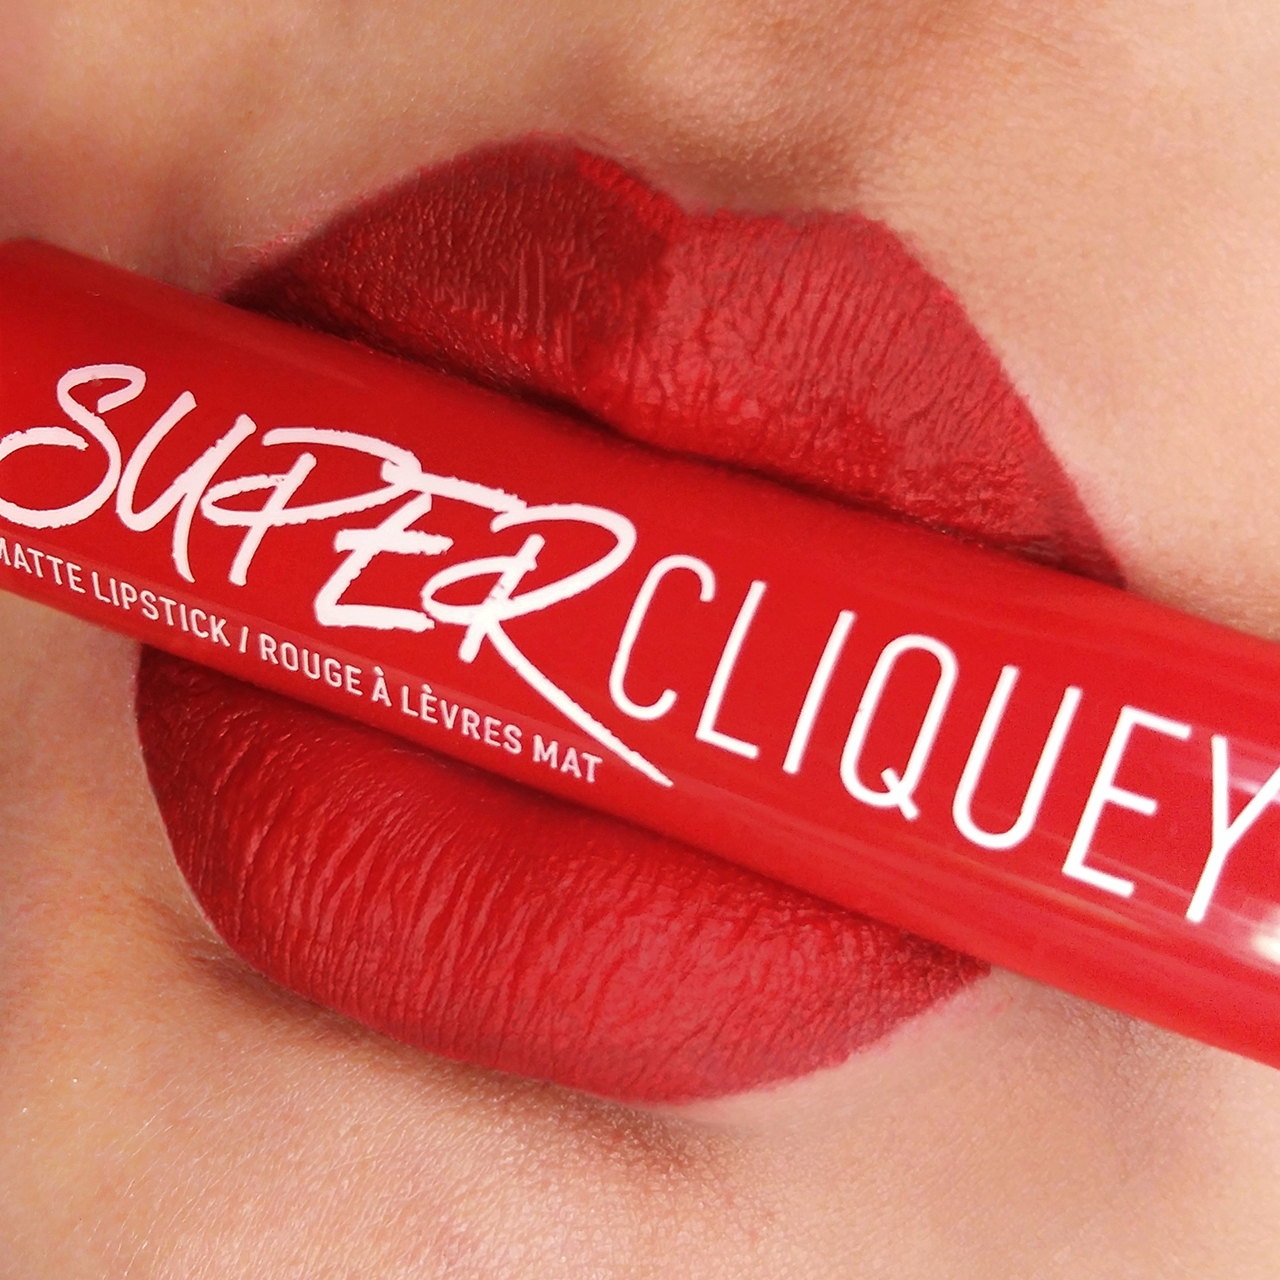 NYX Super Cliquey Matte Lipsticks